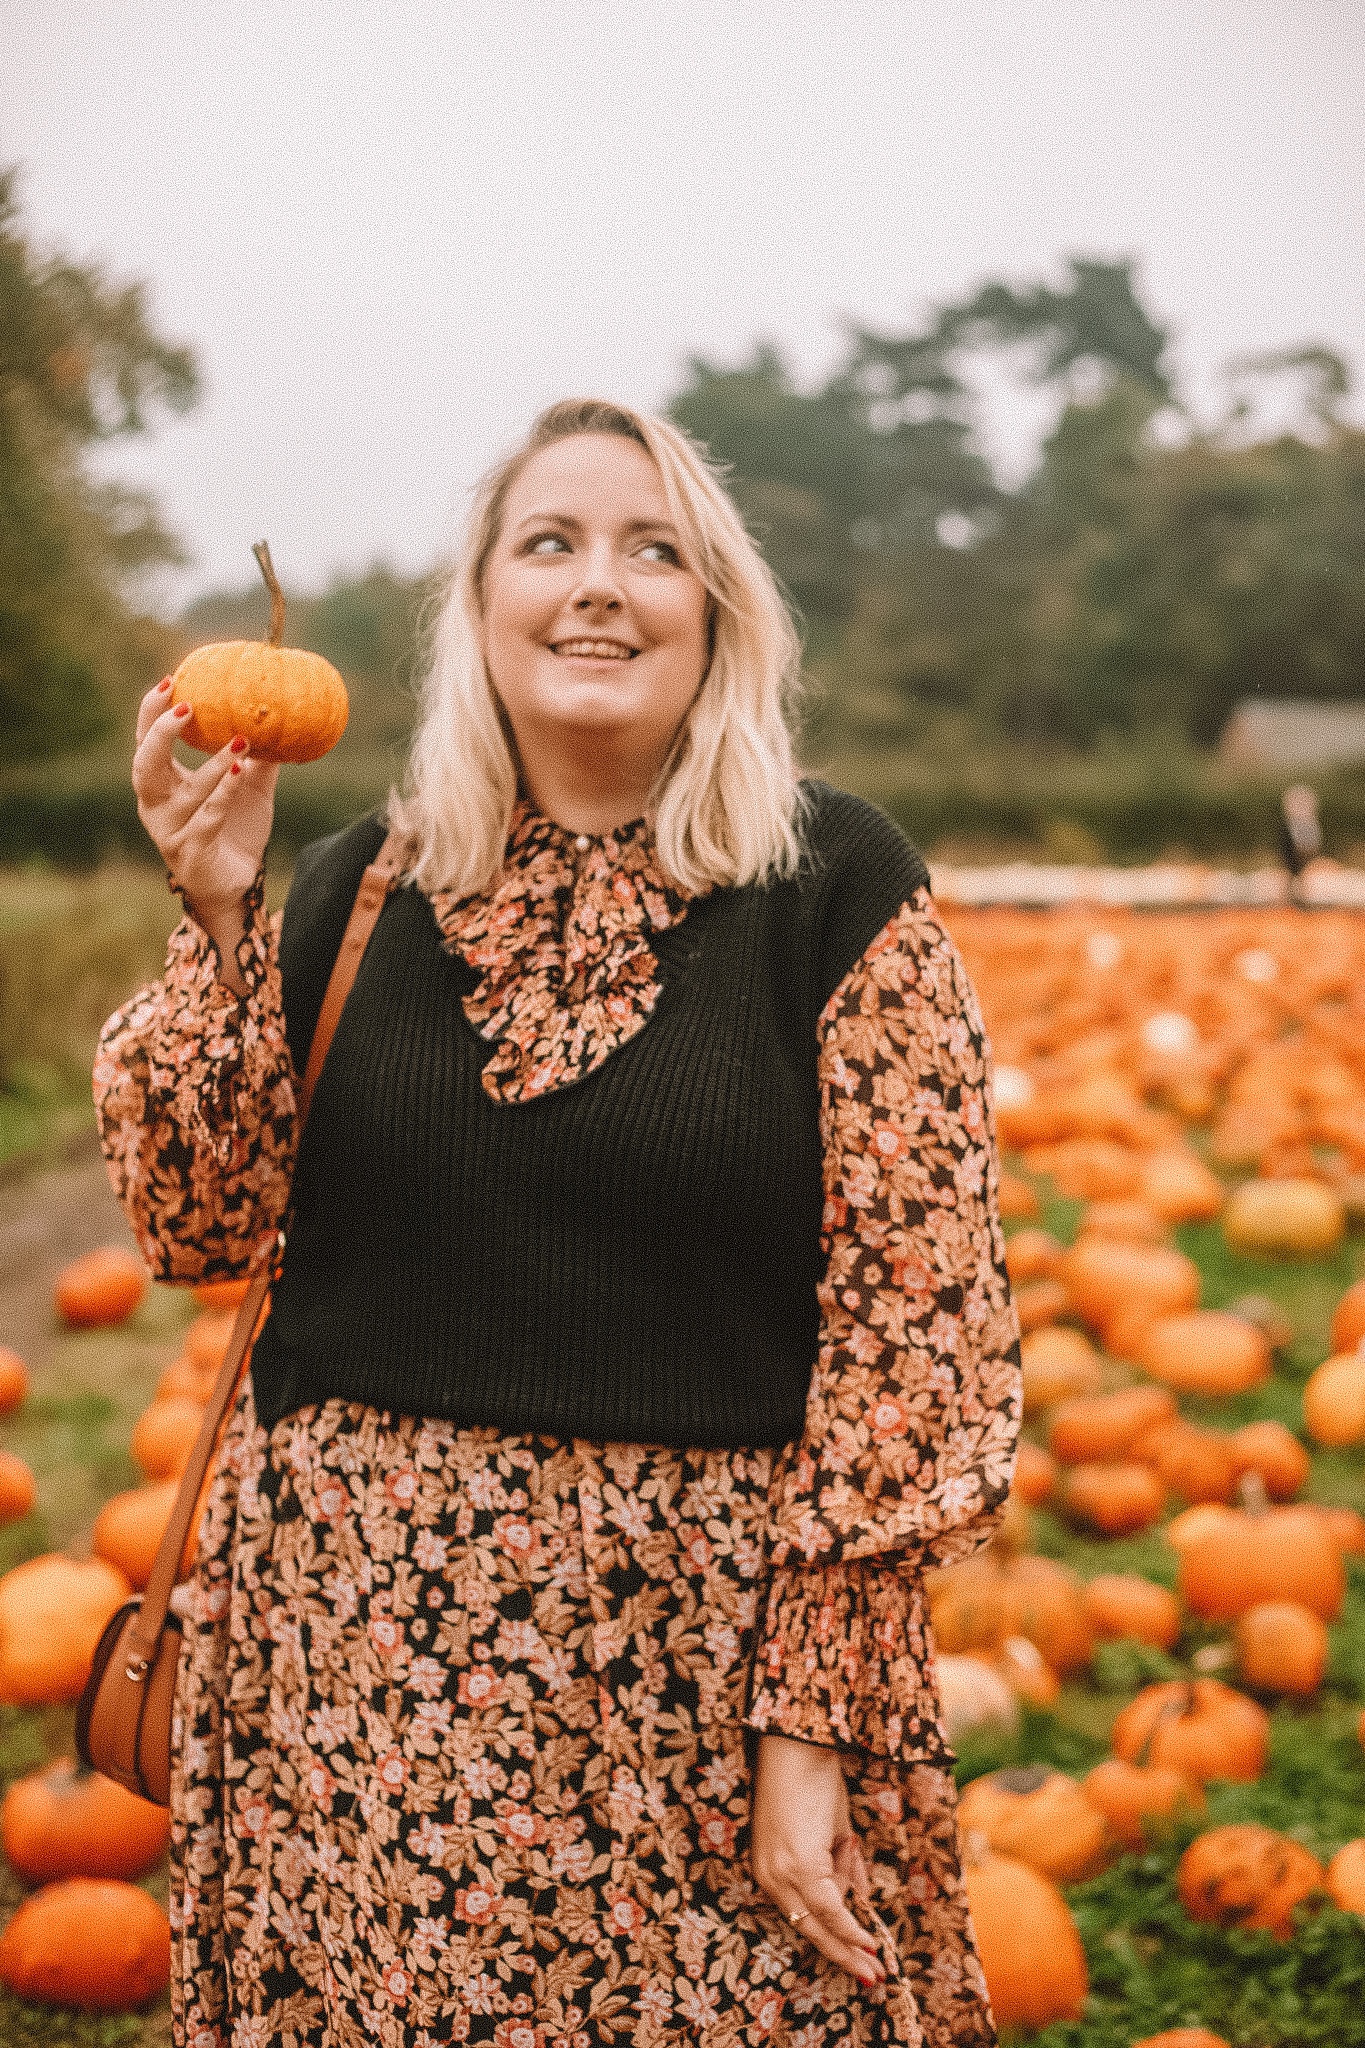 Lucy stood in a pumpkin field holding a pumpkin